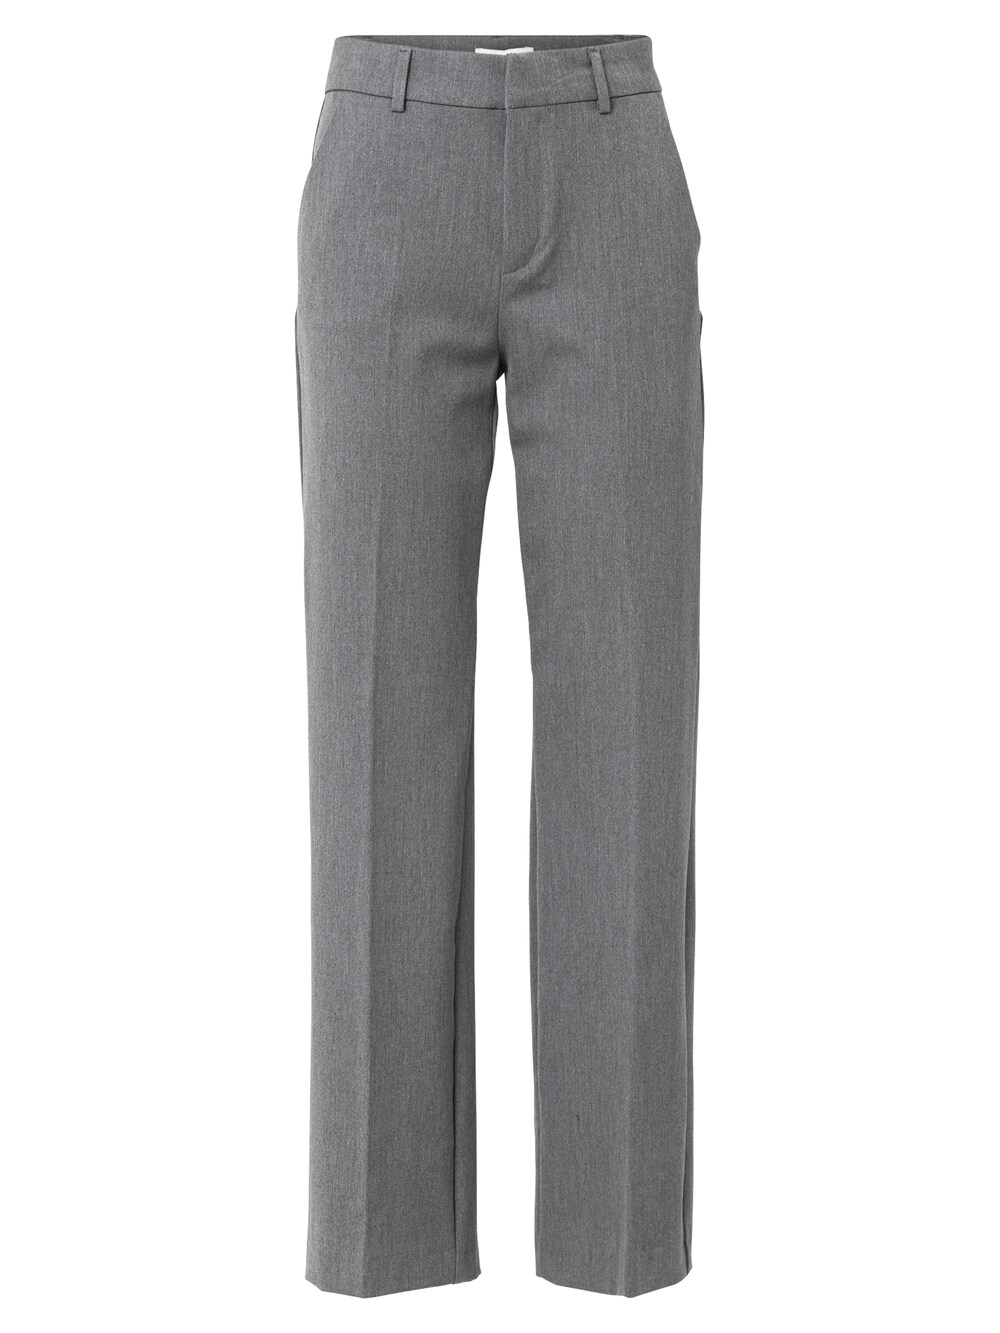 Обычные плиссированные брюки Mbym, серый